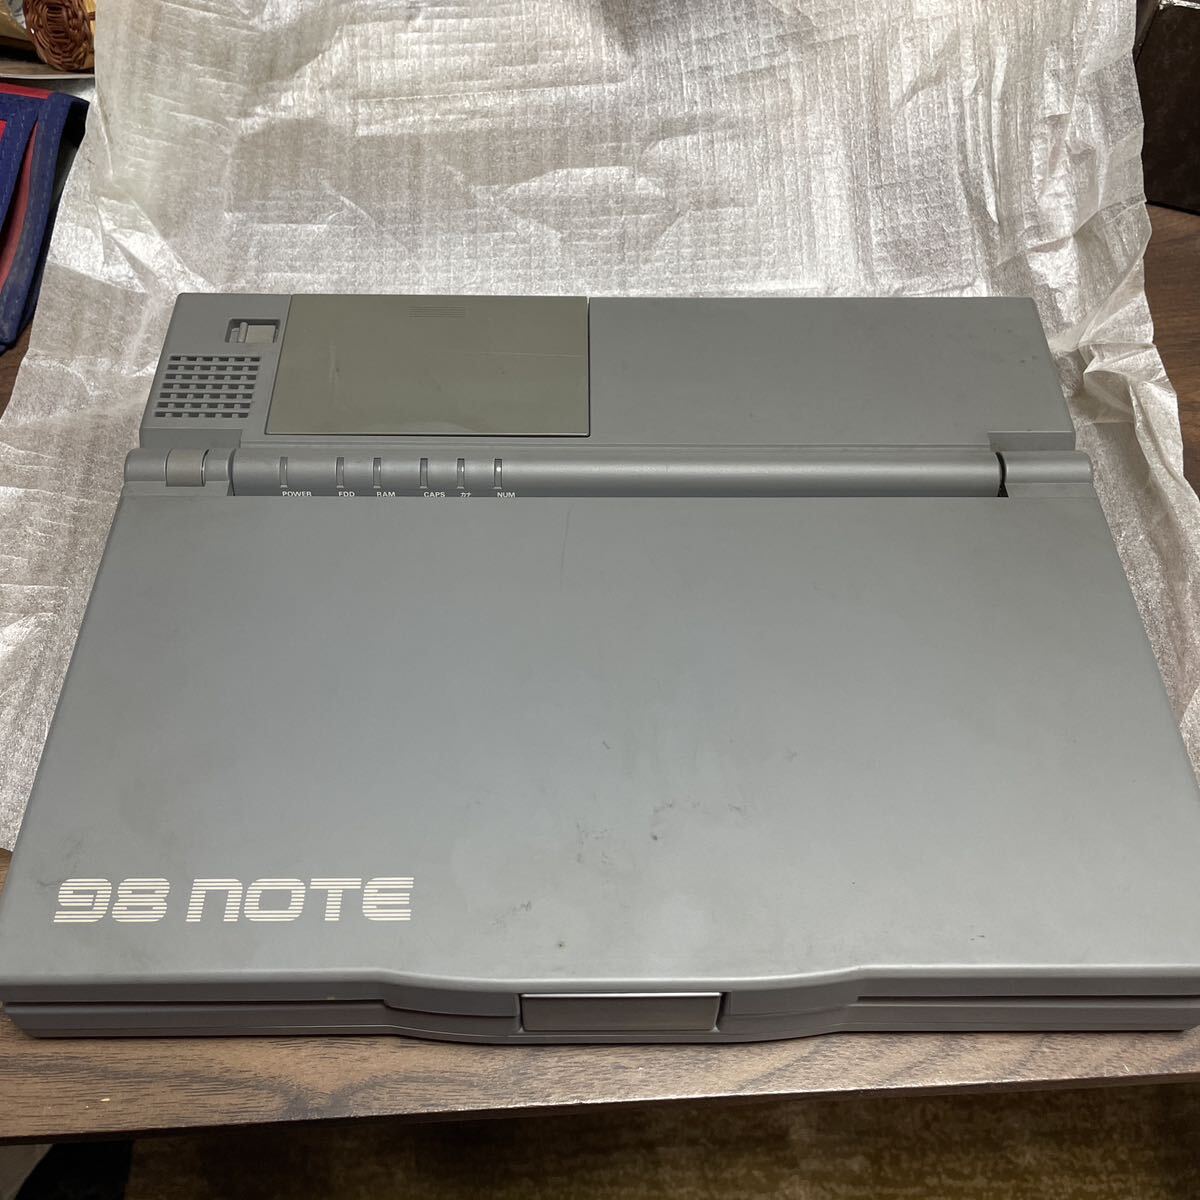 [ работоспособность не проверялась ] с коробкой NEC персональный компьютер PC-9800 серии PC-9801n 98NOTE